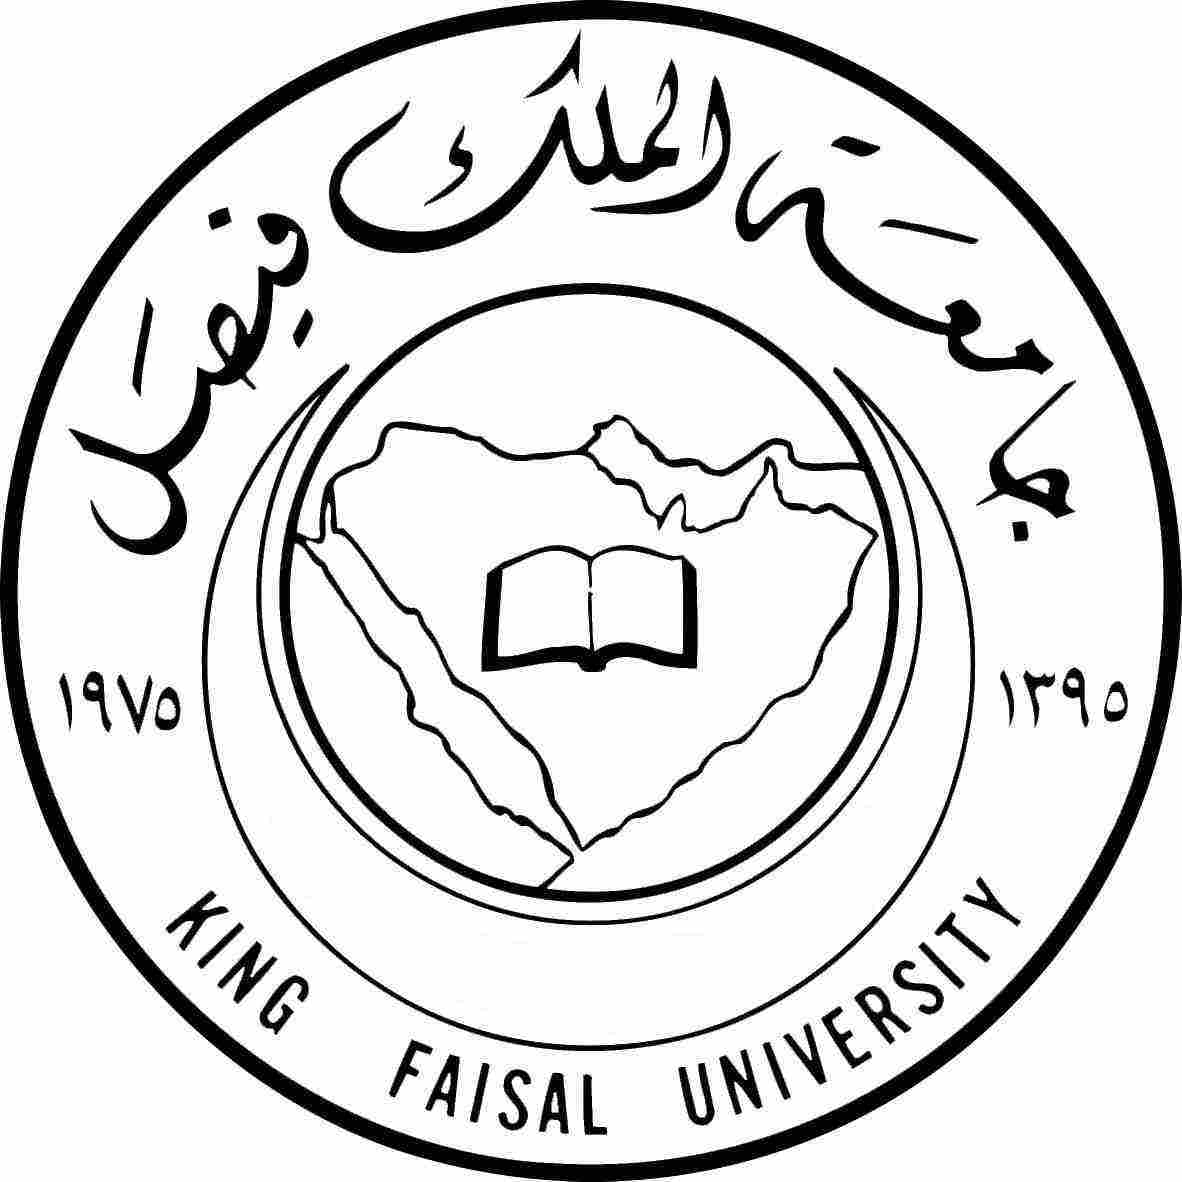 جامعة فيصل الحقوق كلية الملك كلية الهندسة